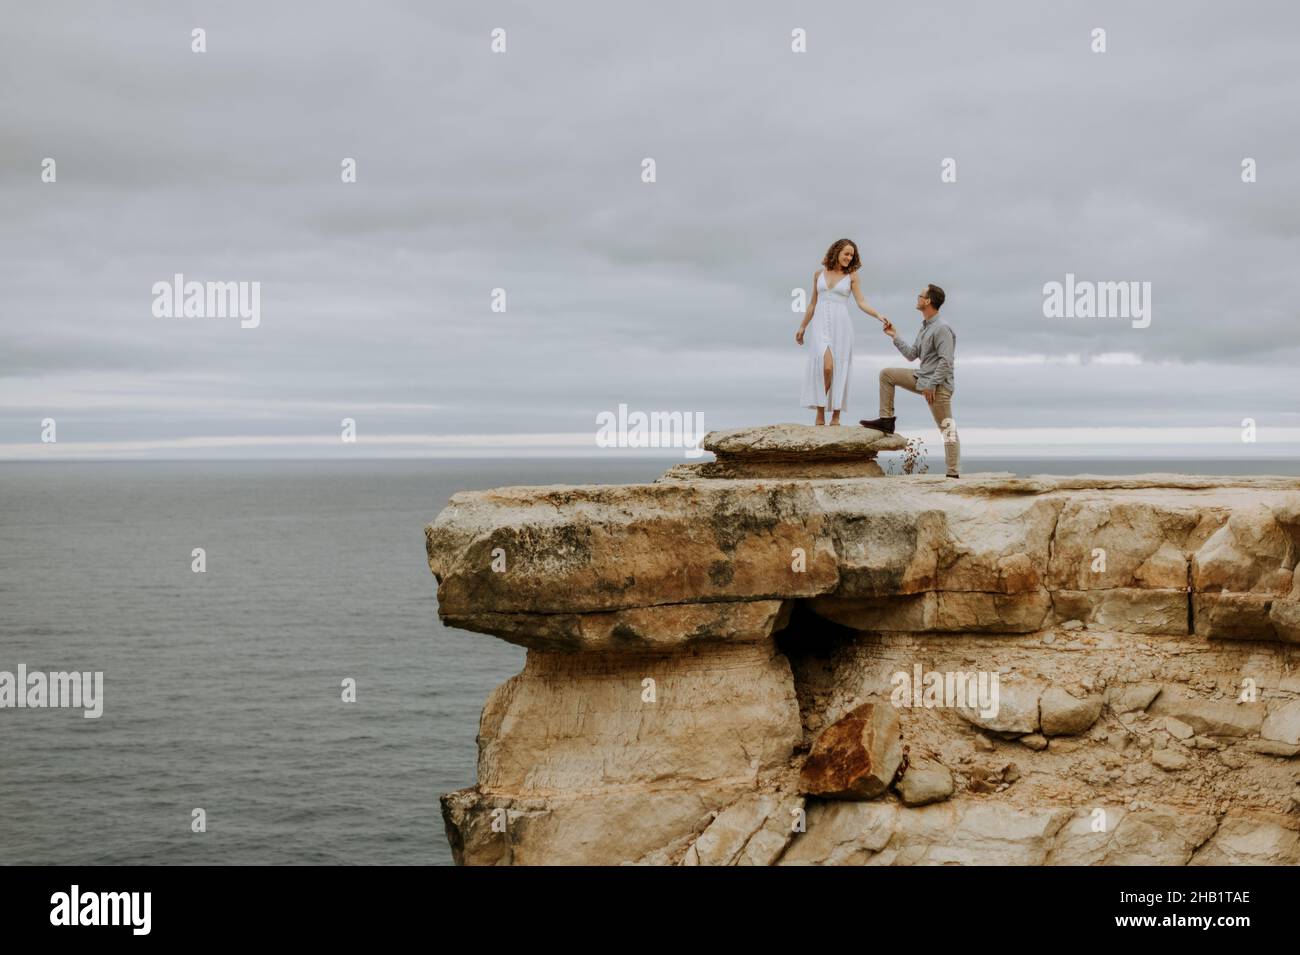 L'homme propose le mariage à la femme sur la falaise, Pictured Rocks, Michigan Banque D'Images